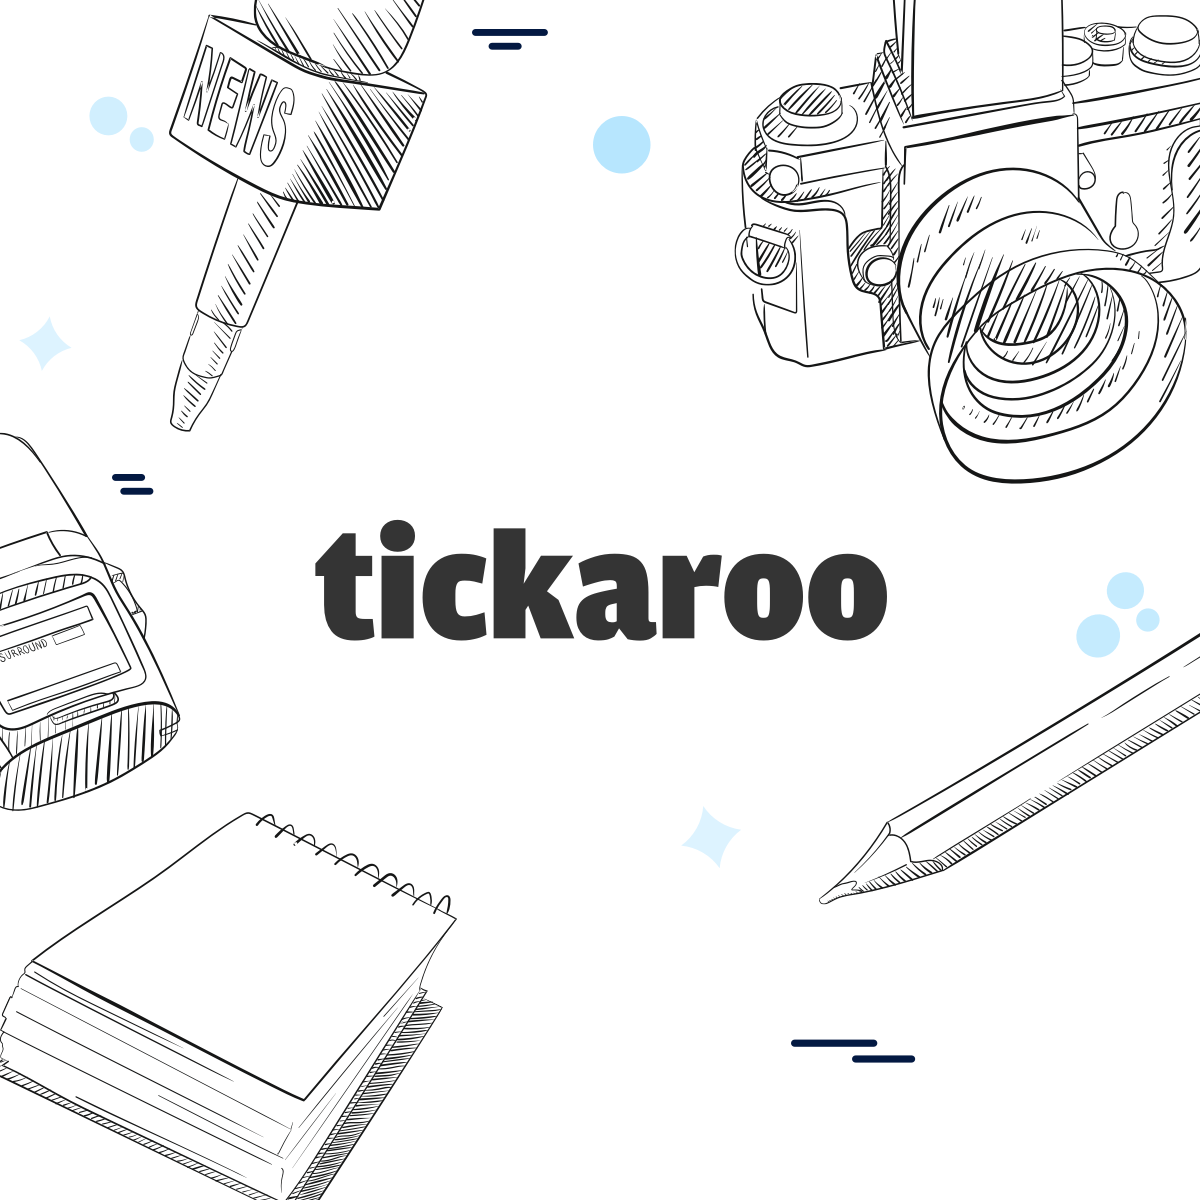 www.tickaroo.com